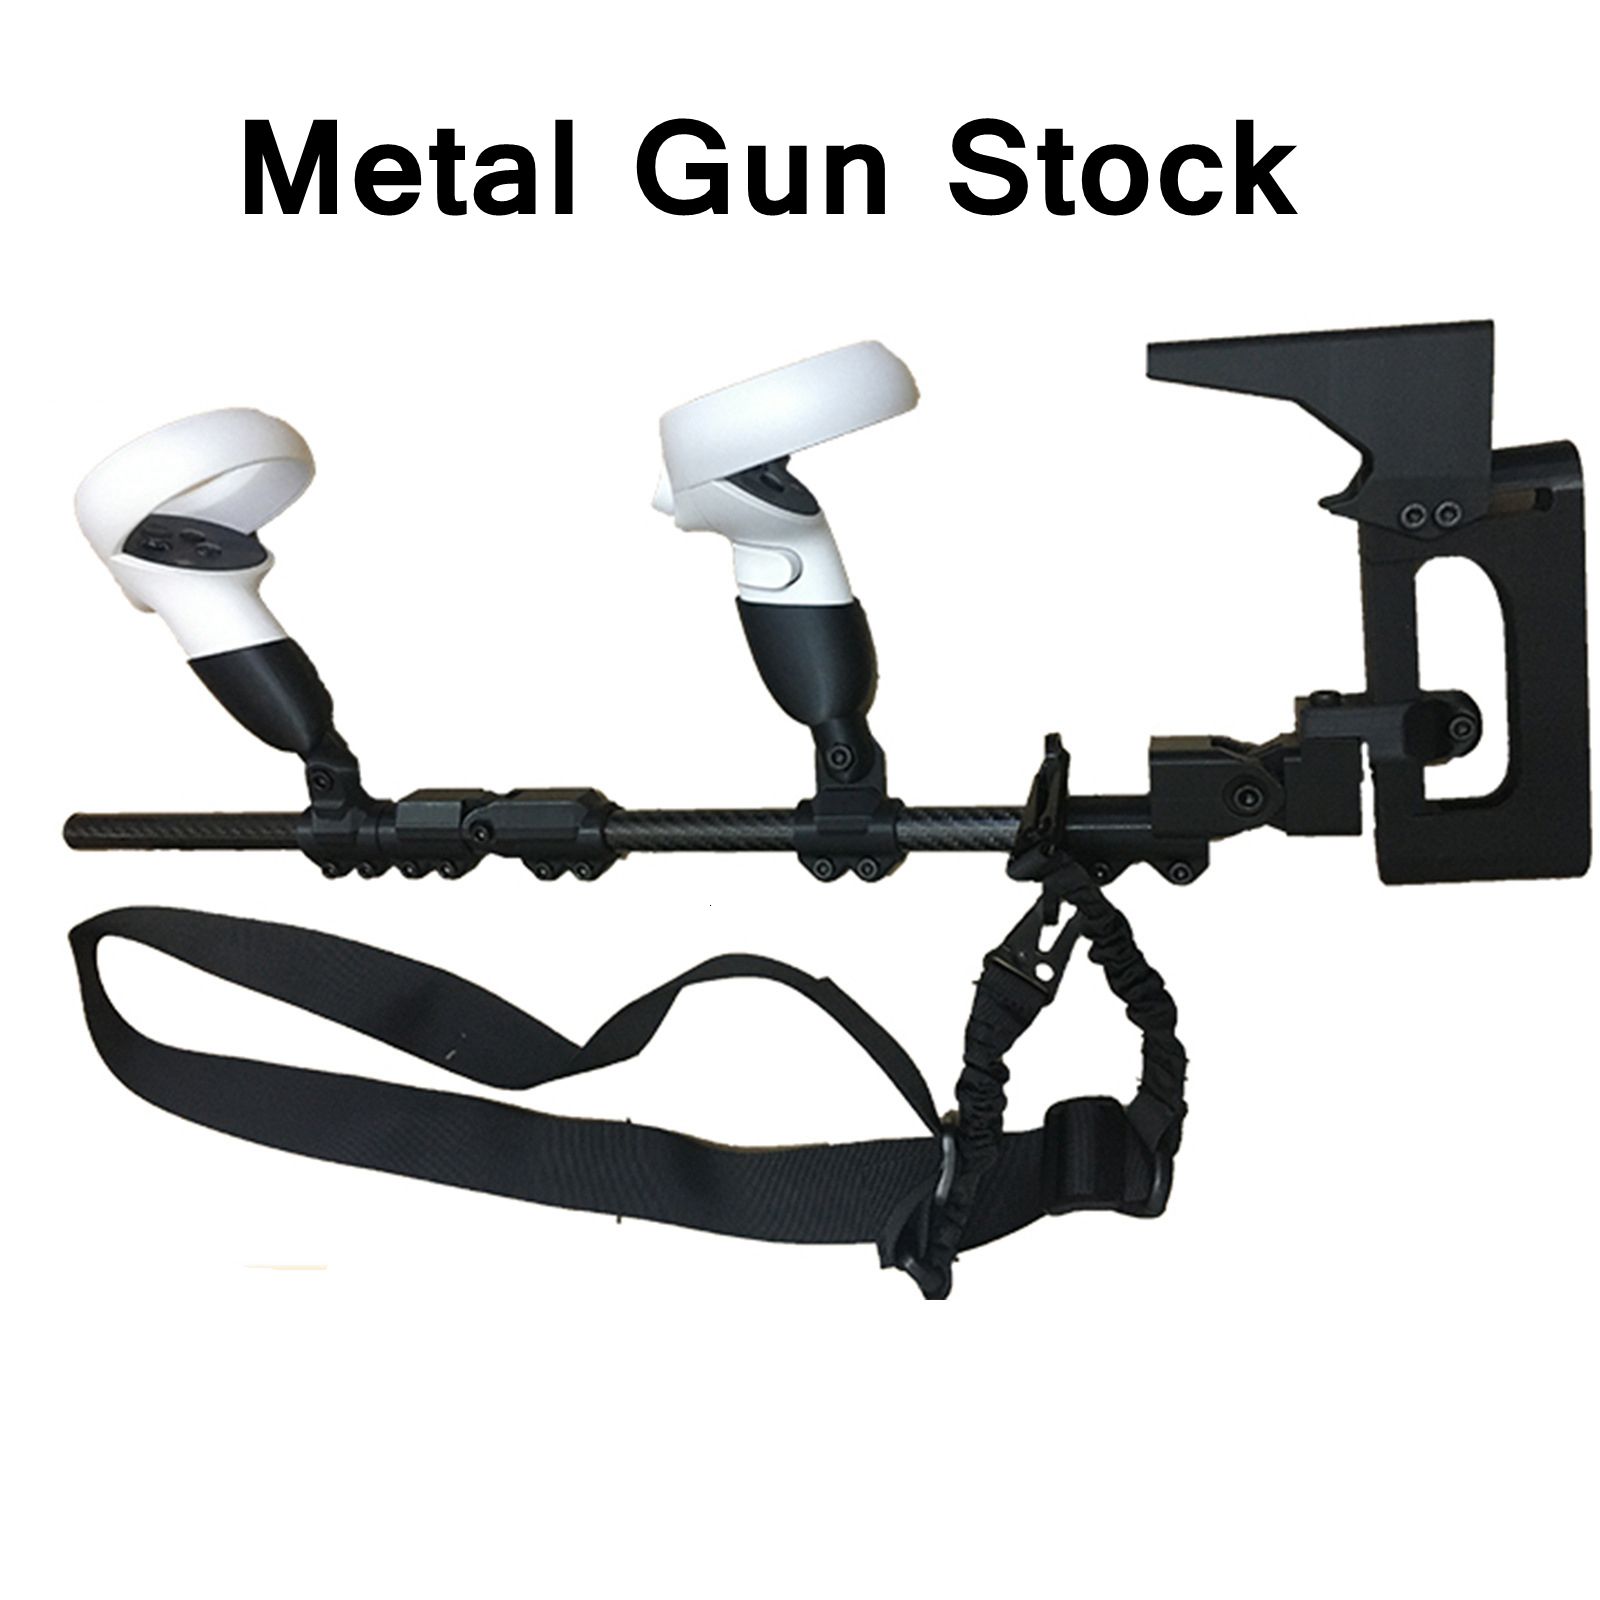 Metal Gun Stock